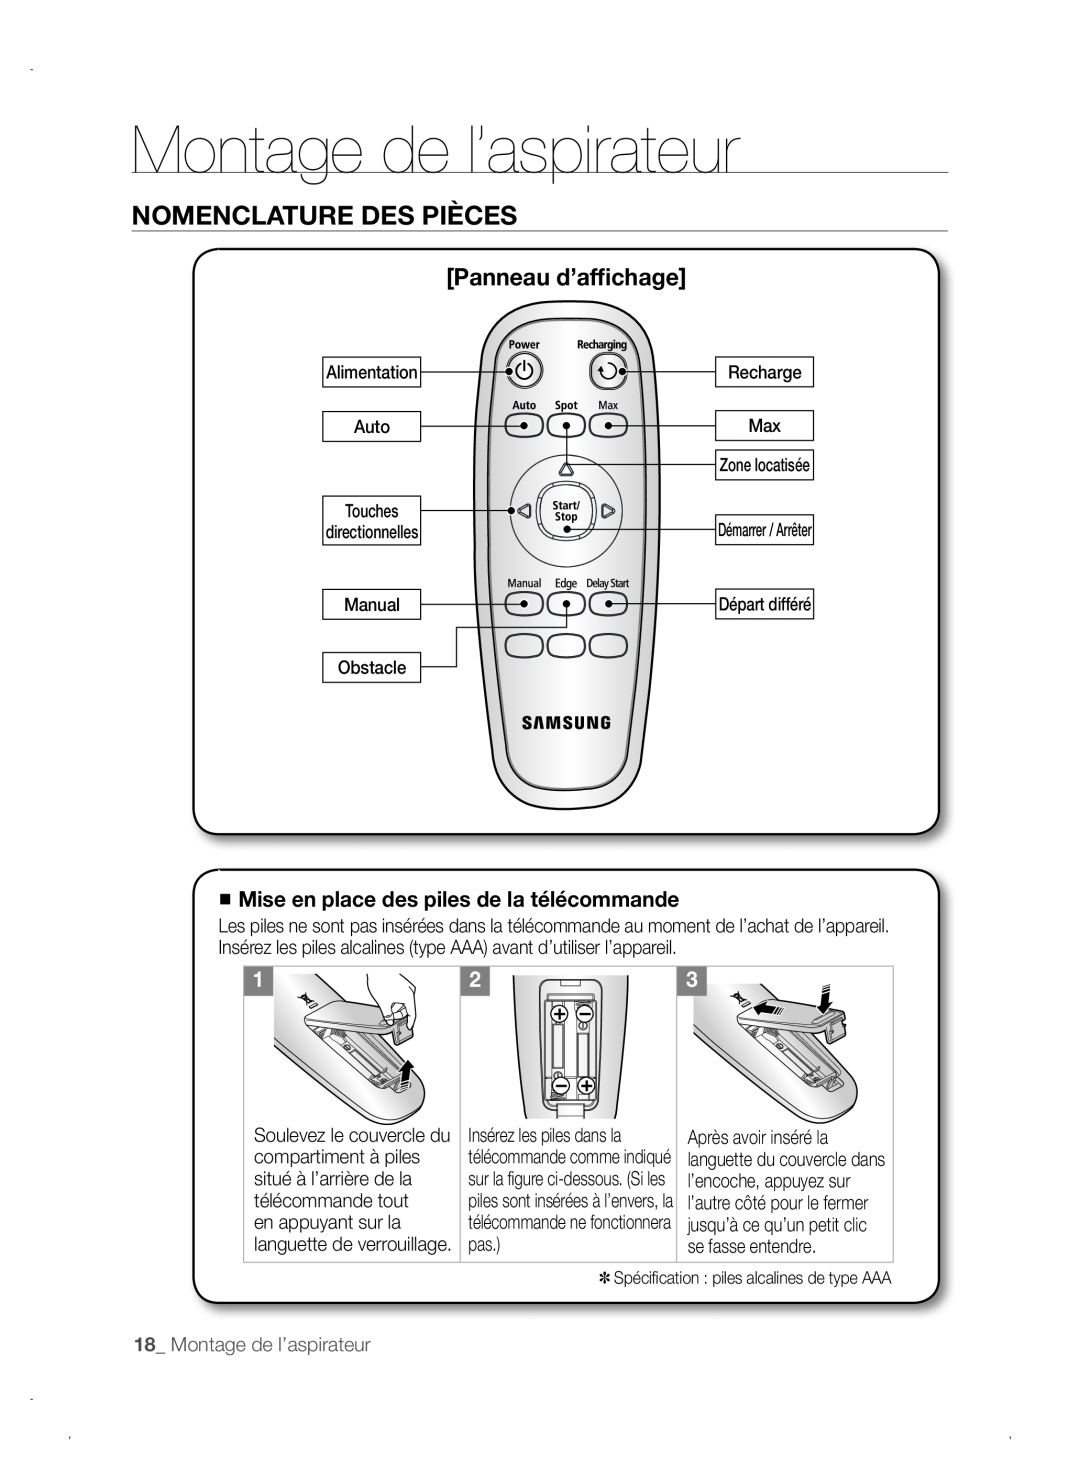 Samsung VCR8845T3A/XEO manual Panneau d’affichage, Mise en place des piles de la télécommande, Montage de l’aspirateur 